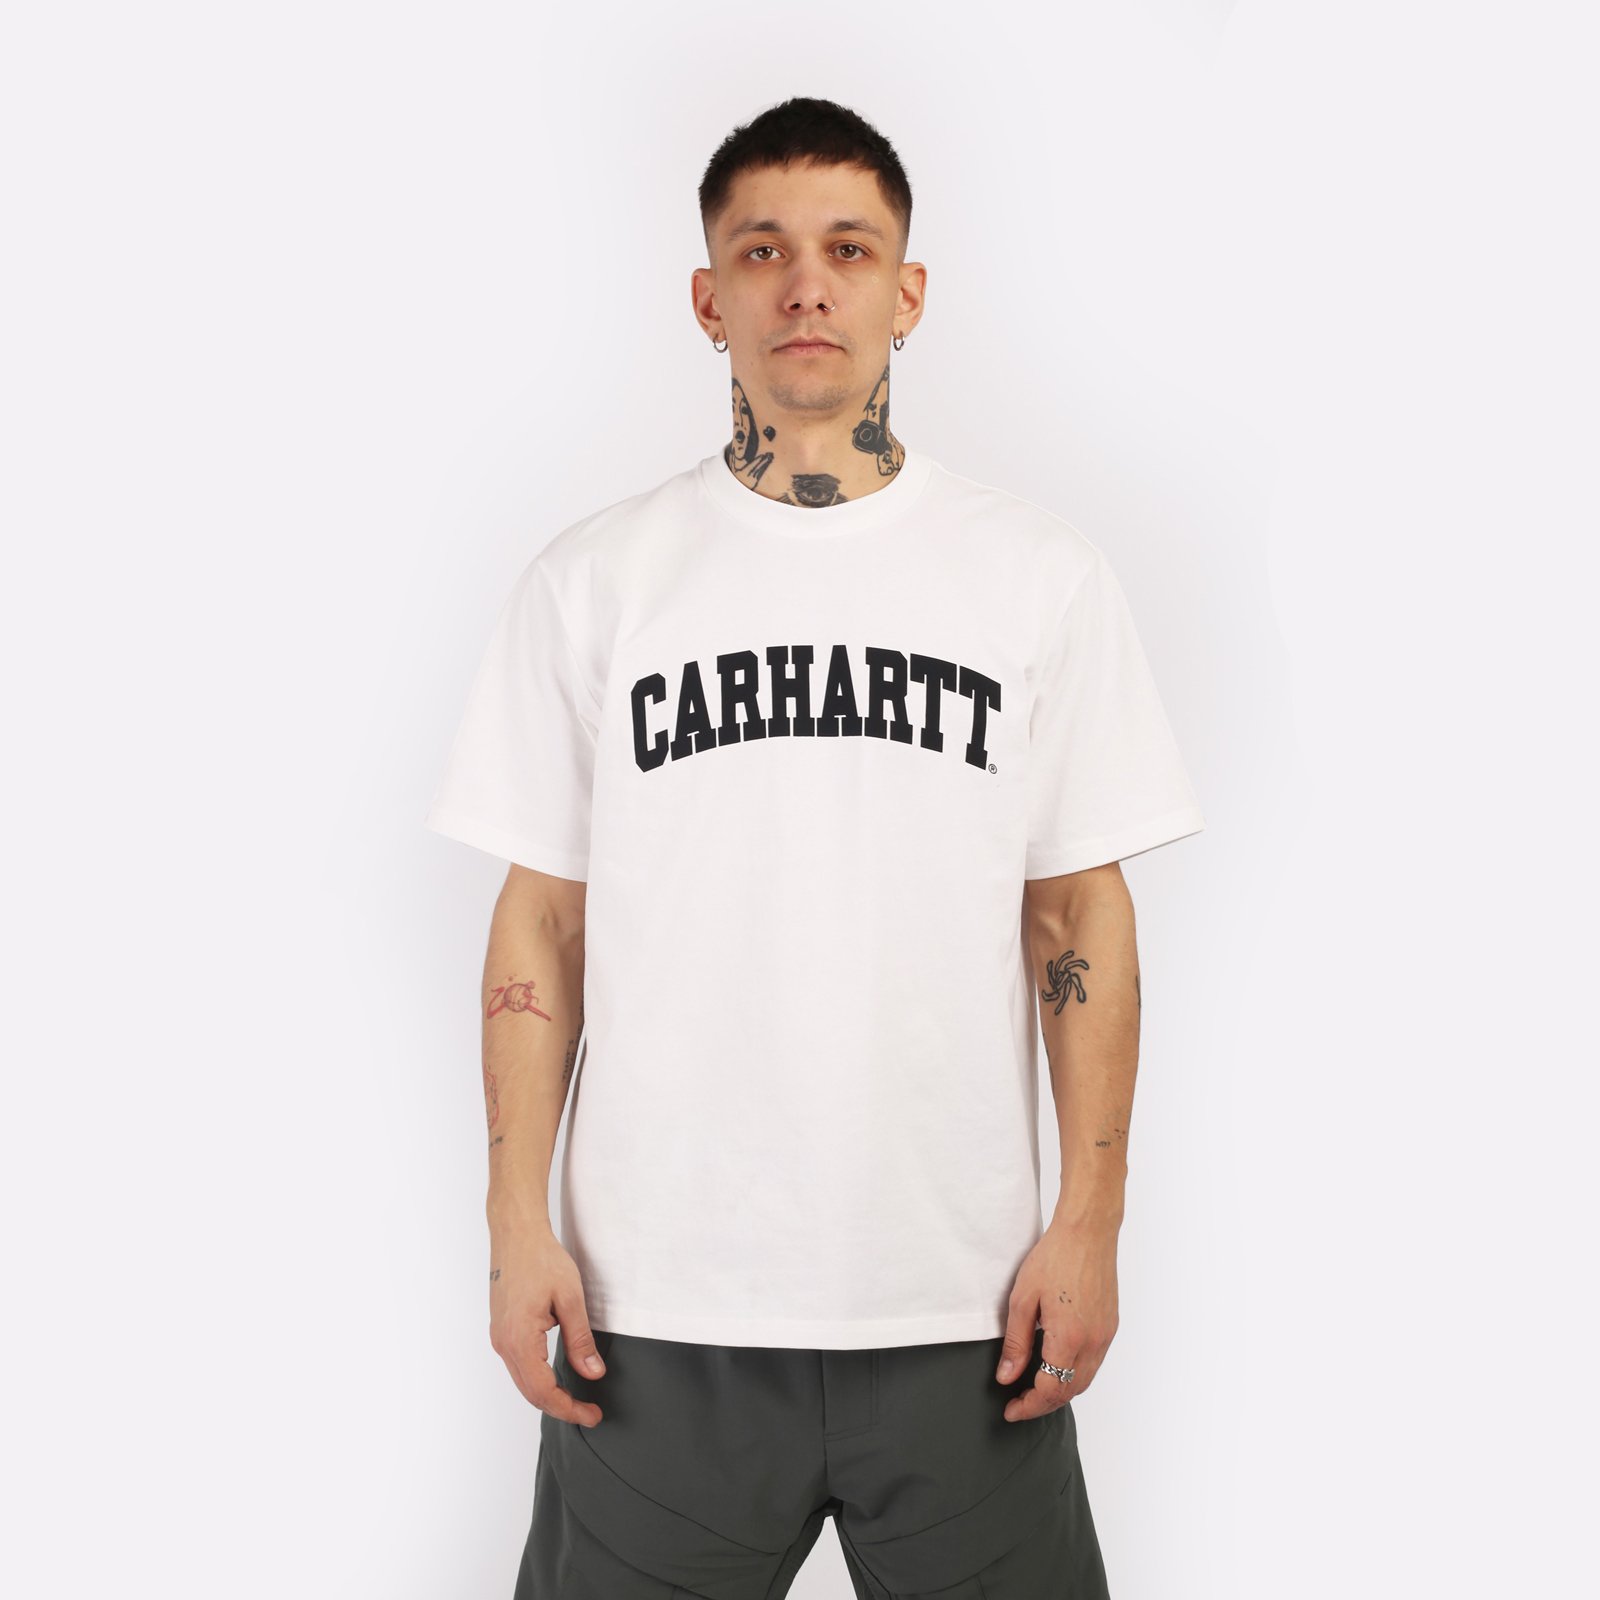 мужская белая футболка Carhartt WIP S/S University T-Shirt I028990-white/black - цена, описание, фото 1